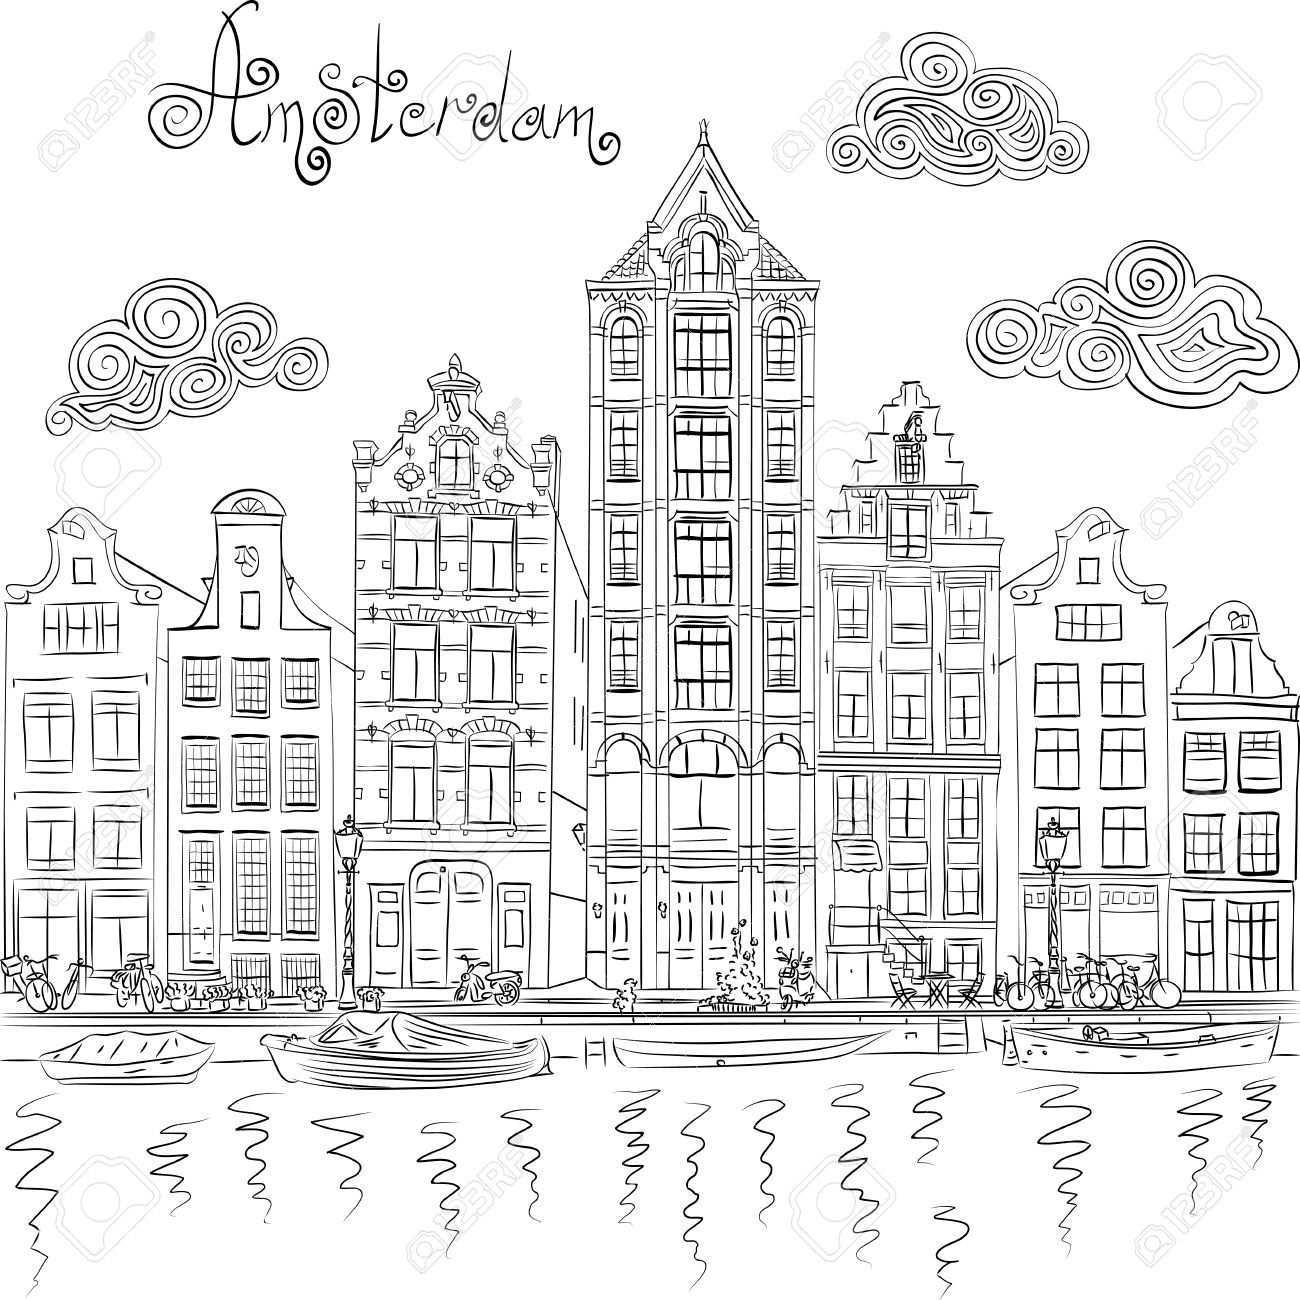 Zwart En Wit Hand Tekening Uitzicht Op De Stad Van De Amsterdamse Gracht En Typische Huizen Holland Nederland Stad Tekening Handen Tekenen Stad Illustratie